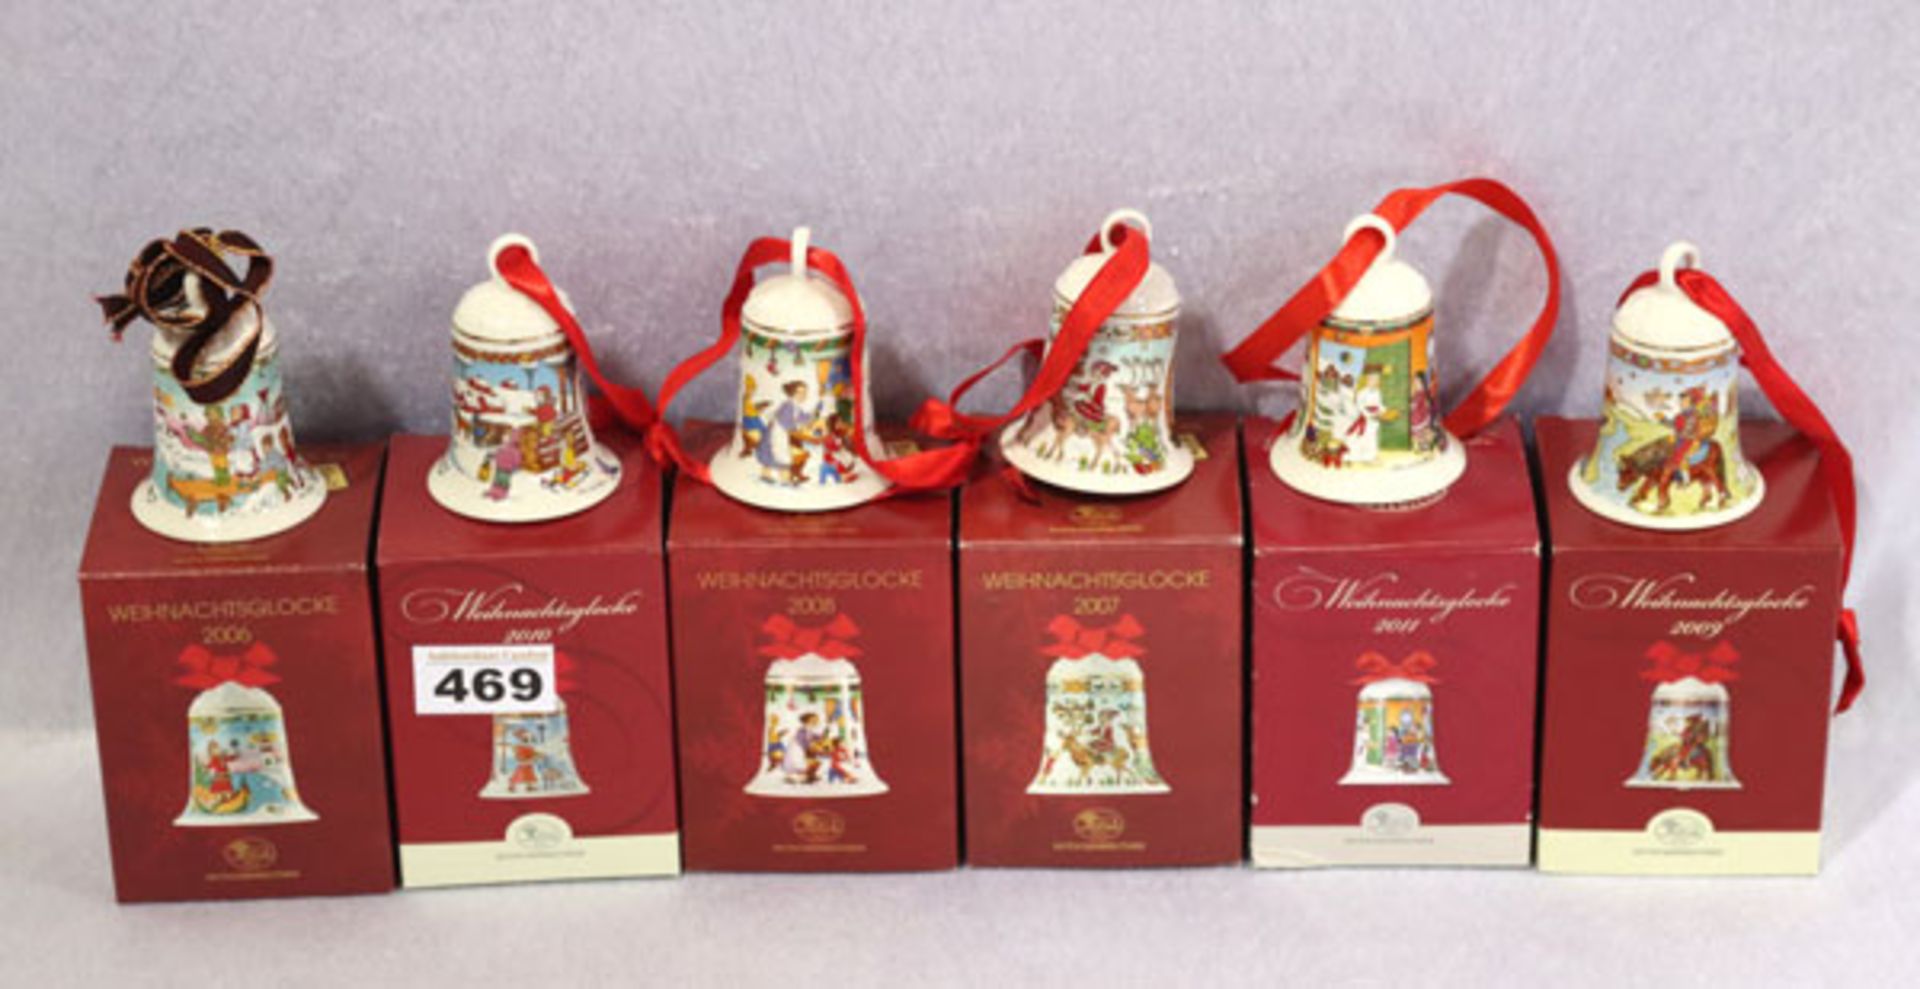 6 Hutschenreuther Porzellan Weihnachtsglocken, 2006 bis 2011, in Originalkarton